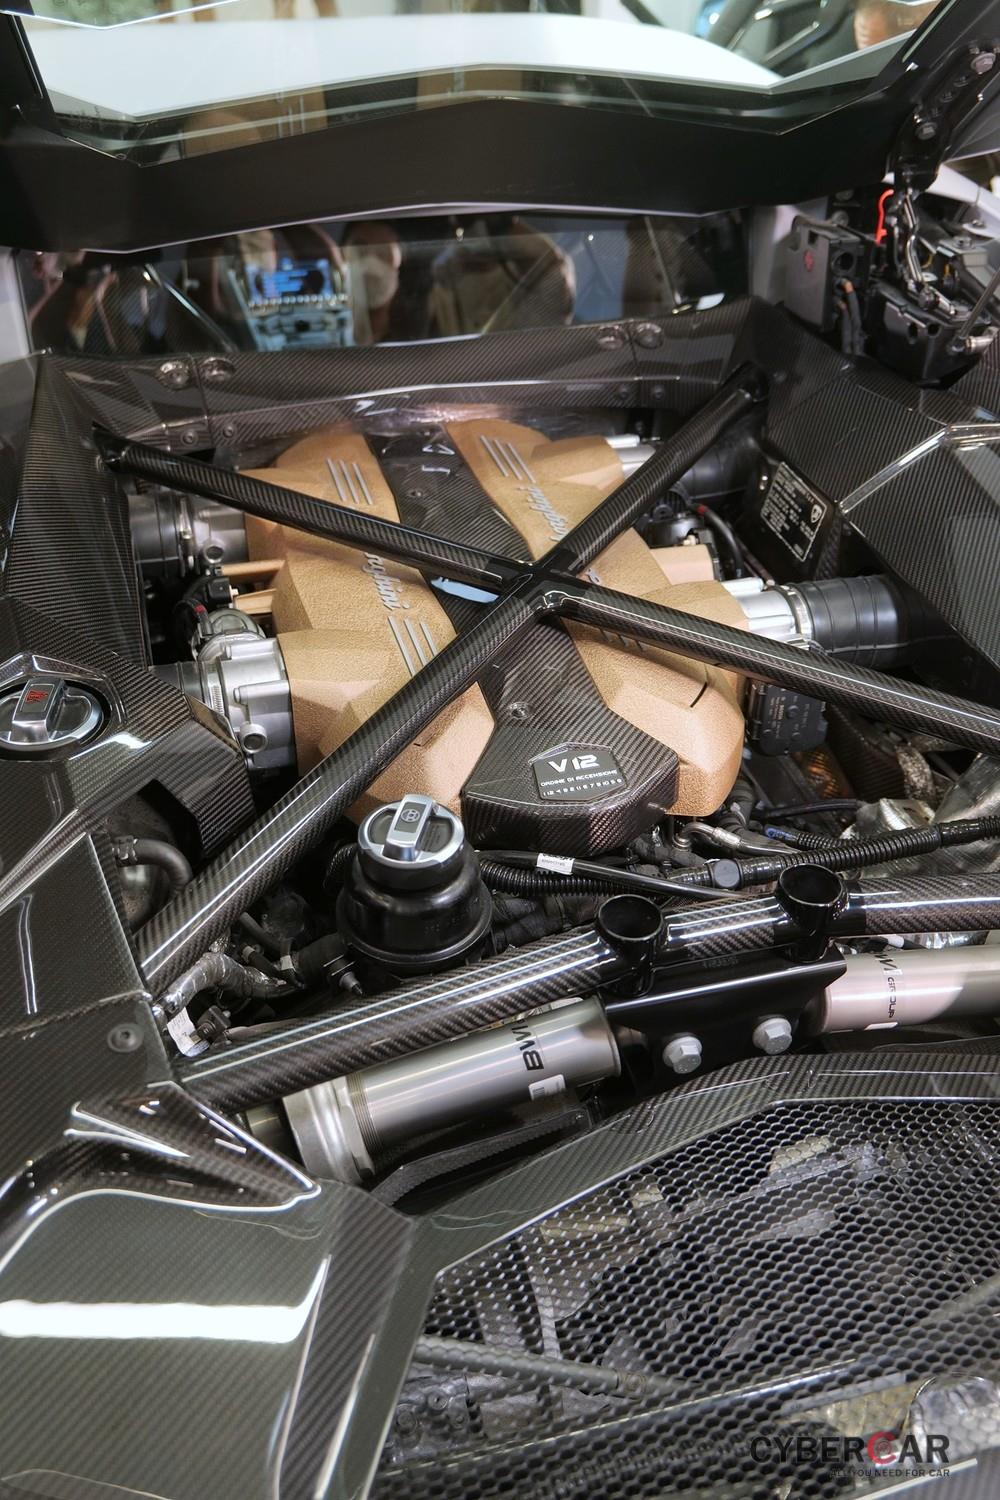 Khối động cơ V12, dung tích 6.5 lít của Lamborghini Aventador LP780-4 Ultimae có công suất 769 mã lực, cao hơn 10 mã lực so với Aventador SVJ